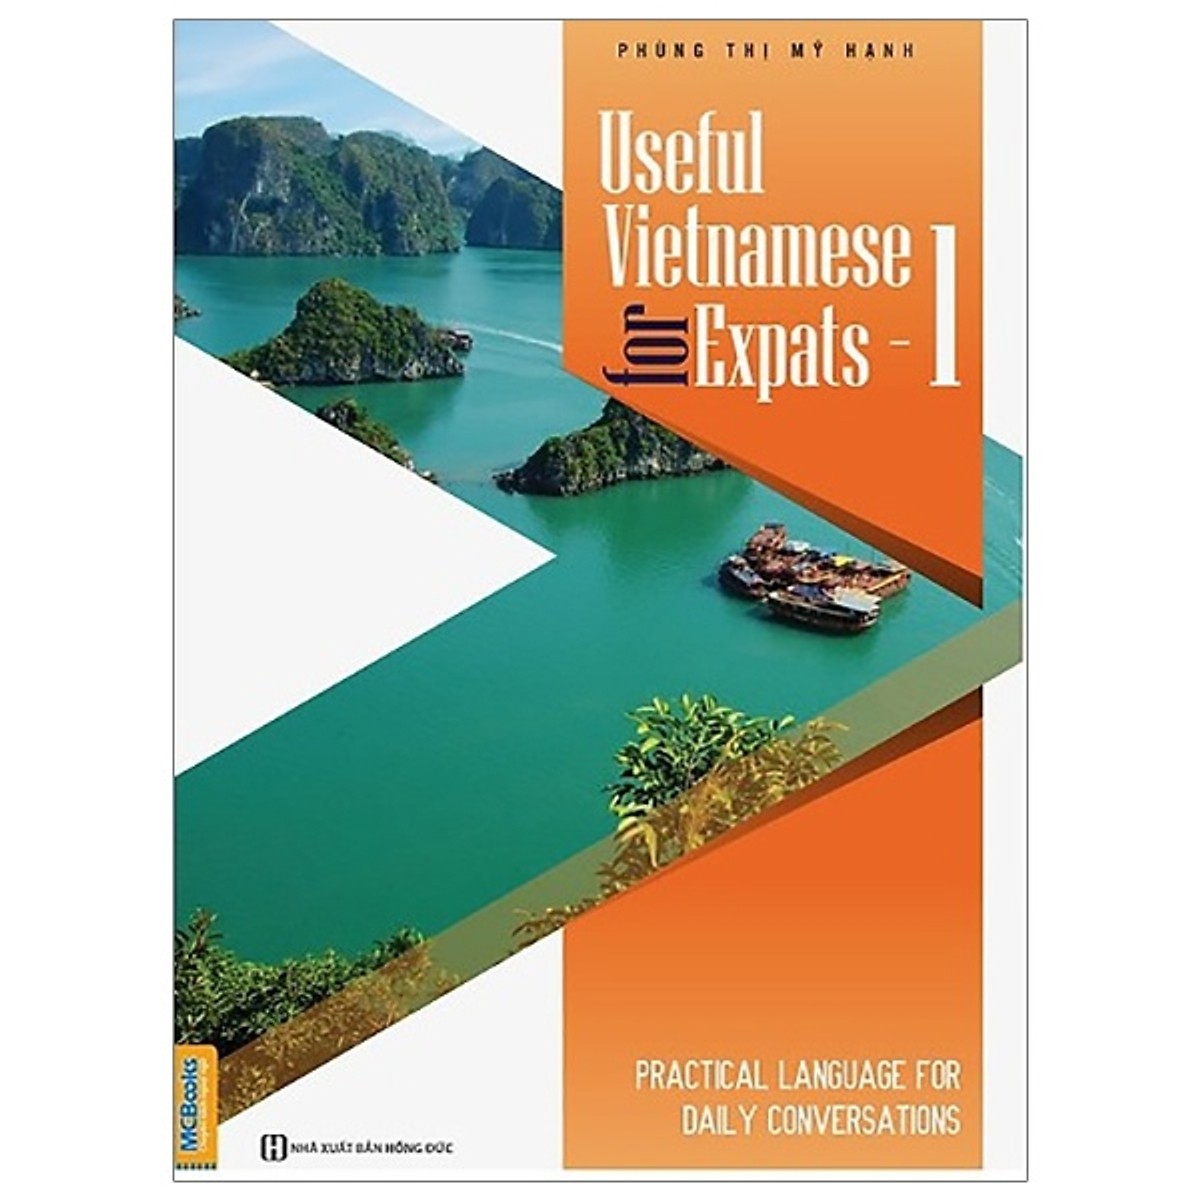 Useful Vietnamese For Expats - 1 (Quét QR Code tại App MCBooks Để Nhận Bộ Quà Tặng) (Tặng Thêm Bút Hoạt Hình Cực Xinh)